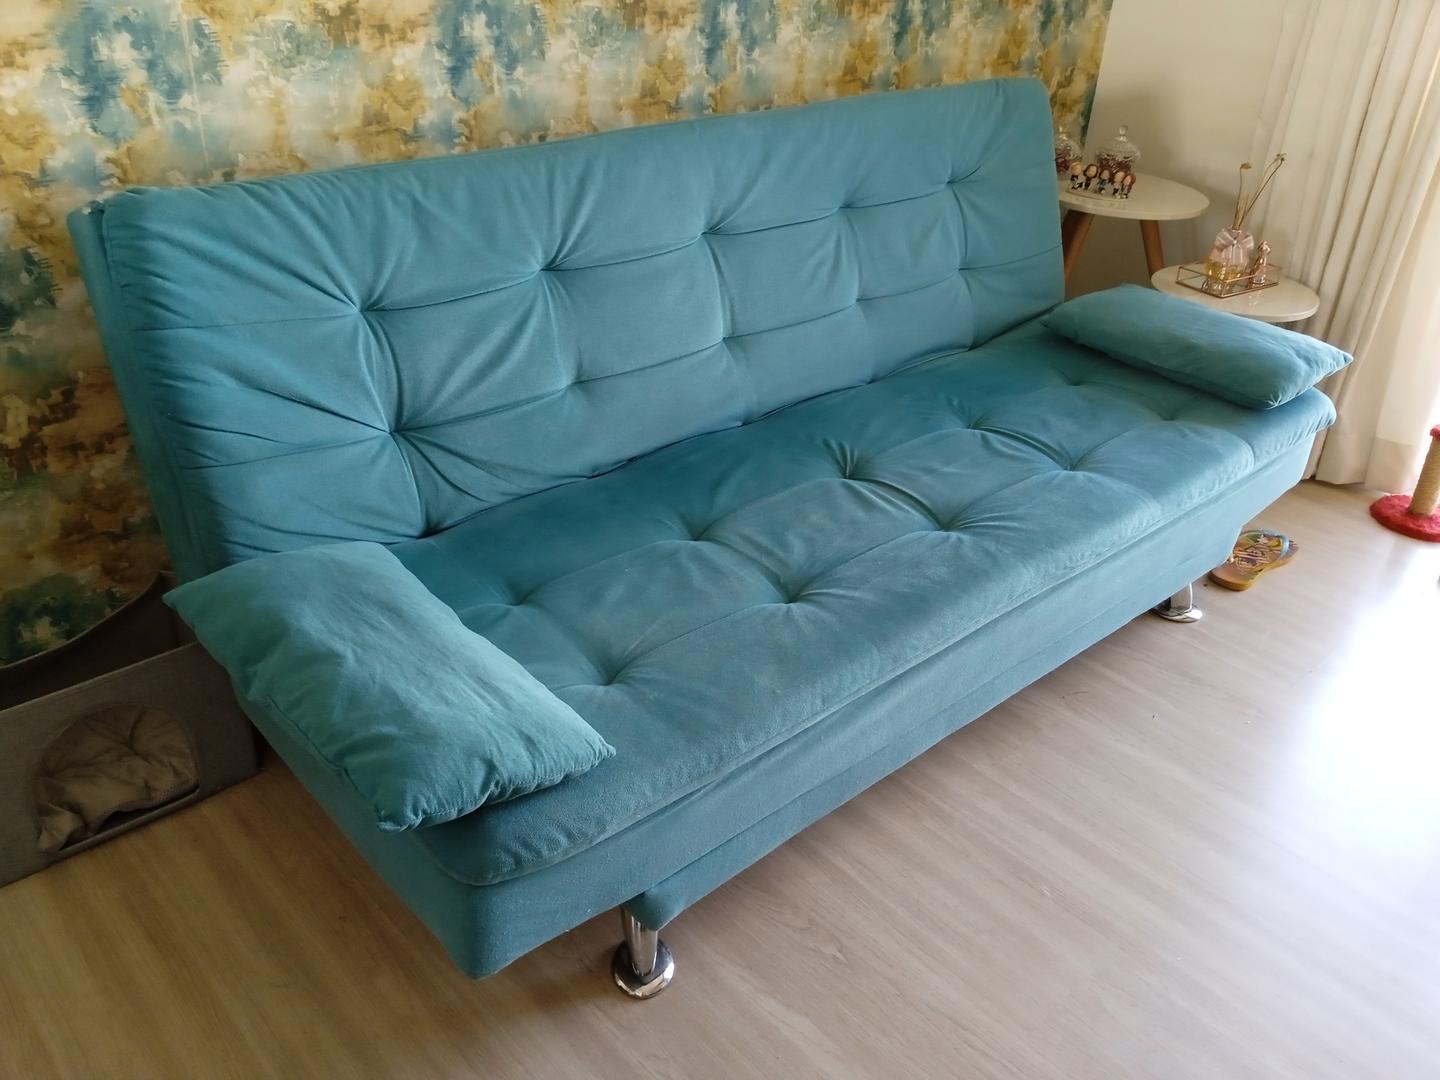 Sofá Cama Linoforte em Estofado / Tecido Azul 86 cm x 200 cm x 93 cm